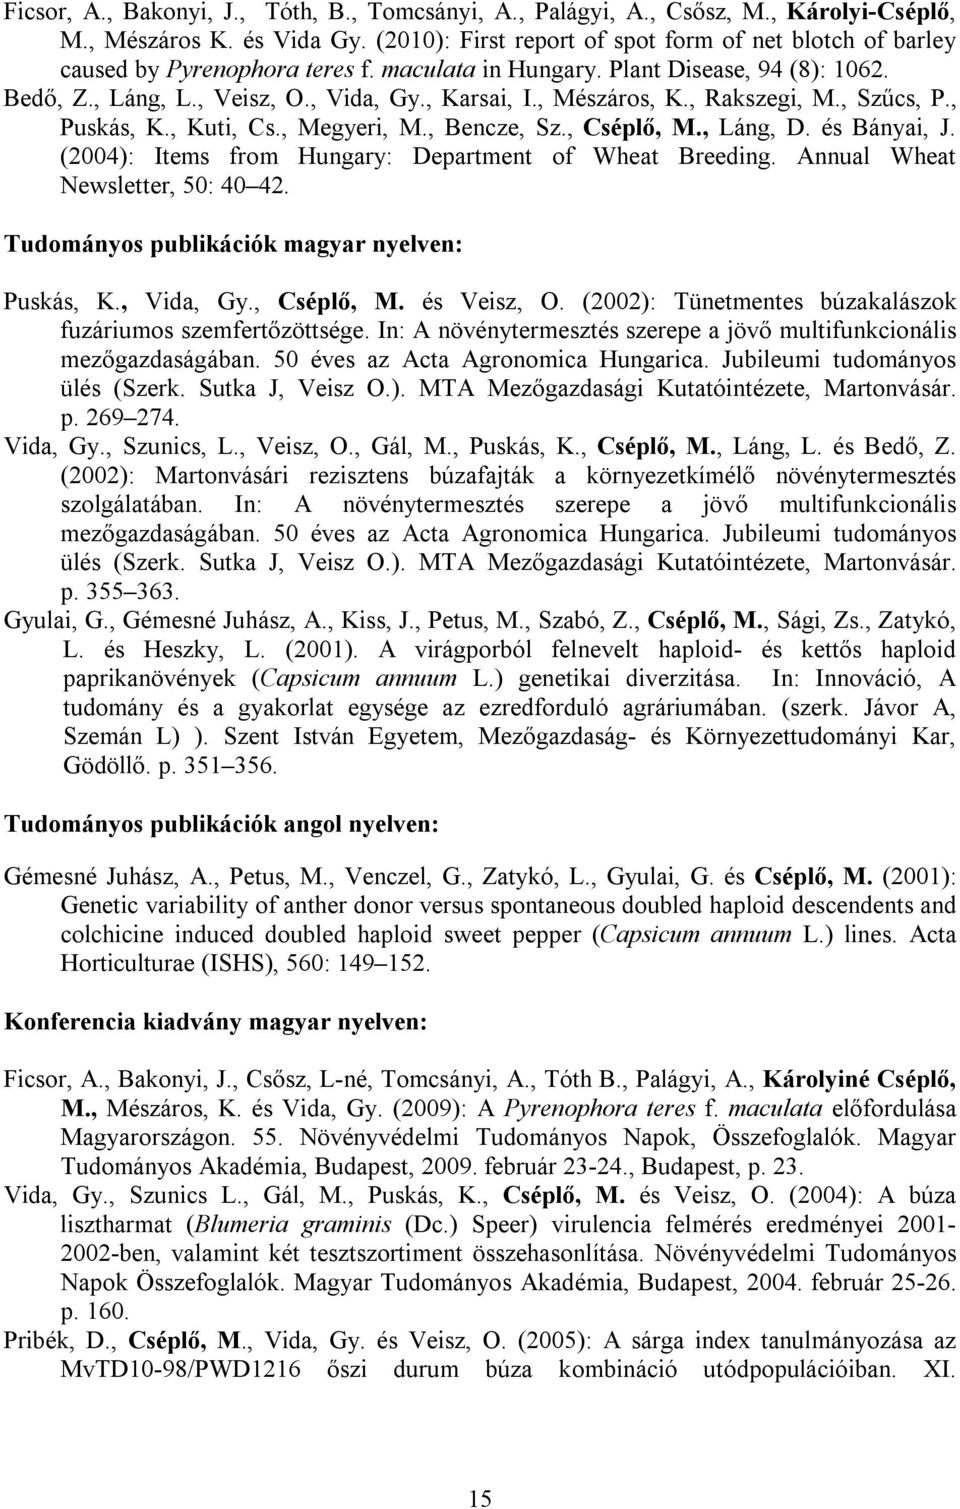 , Mészáros, K., Rakszegi, M., Szűcs, P., Puskás, K., Kuti, Cs., Megyeri, M., Bencze, Sz., Cséplő, M., Láng, D. és Bányai, J. (2004): Items from Hungary: Department of Wheat Breeding.